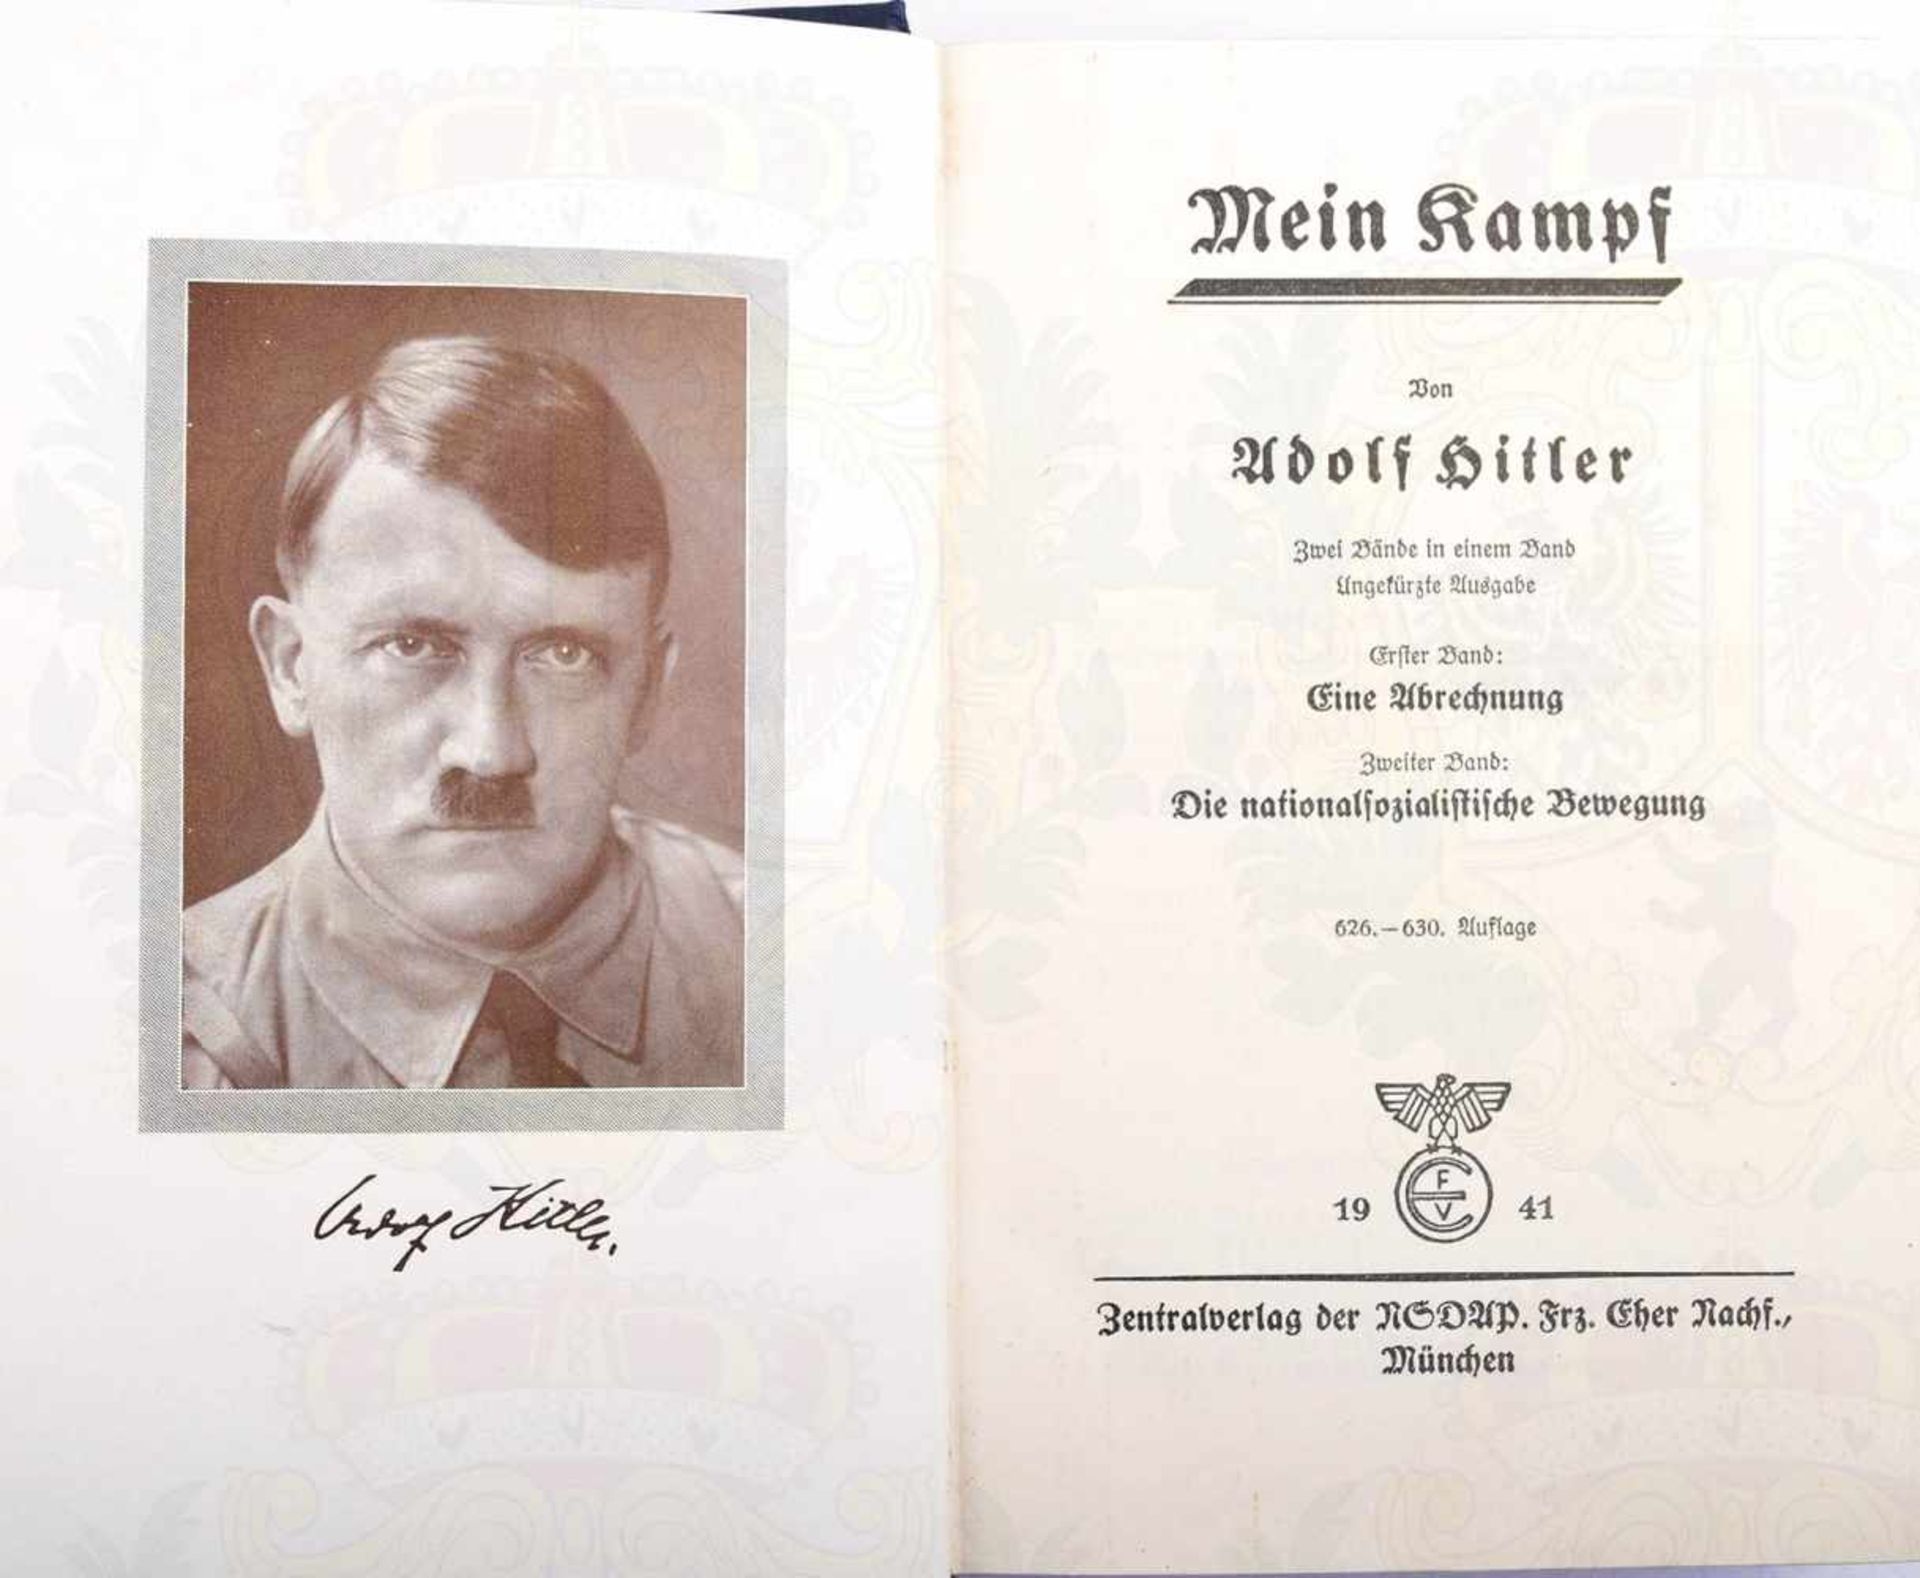 MEIN KAMPF, A. Hitler, Volksausgabe, Eher Verlag 1941, Portrait, 781 S., goldgepr. blaues Ln., - Bild 2 aus 2